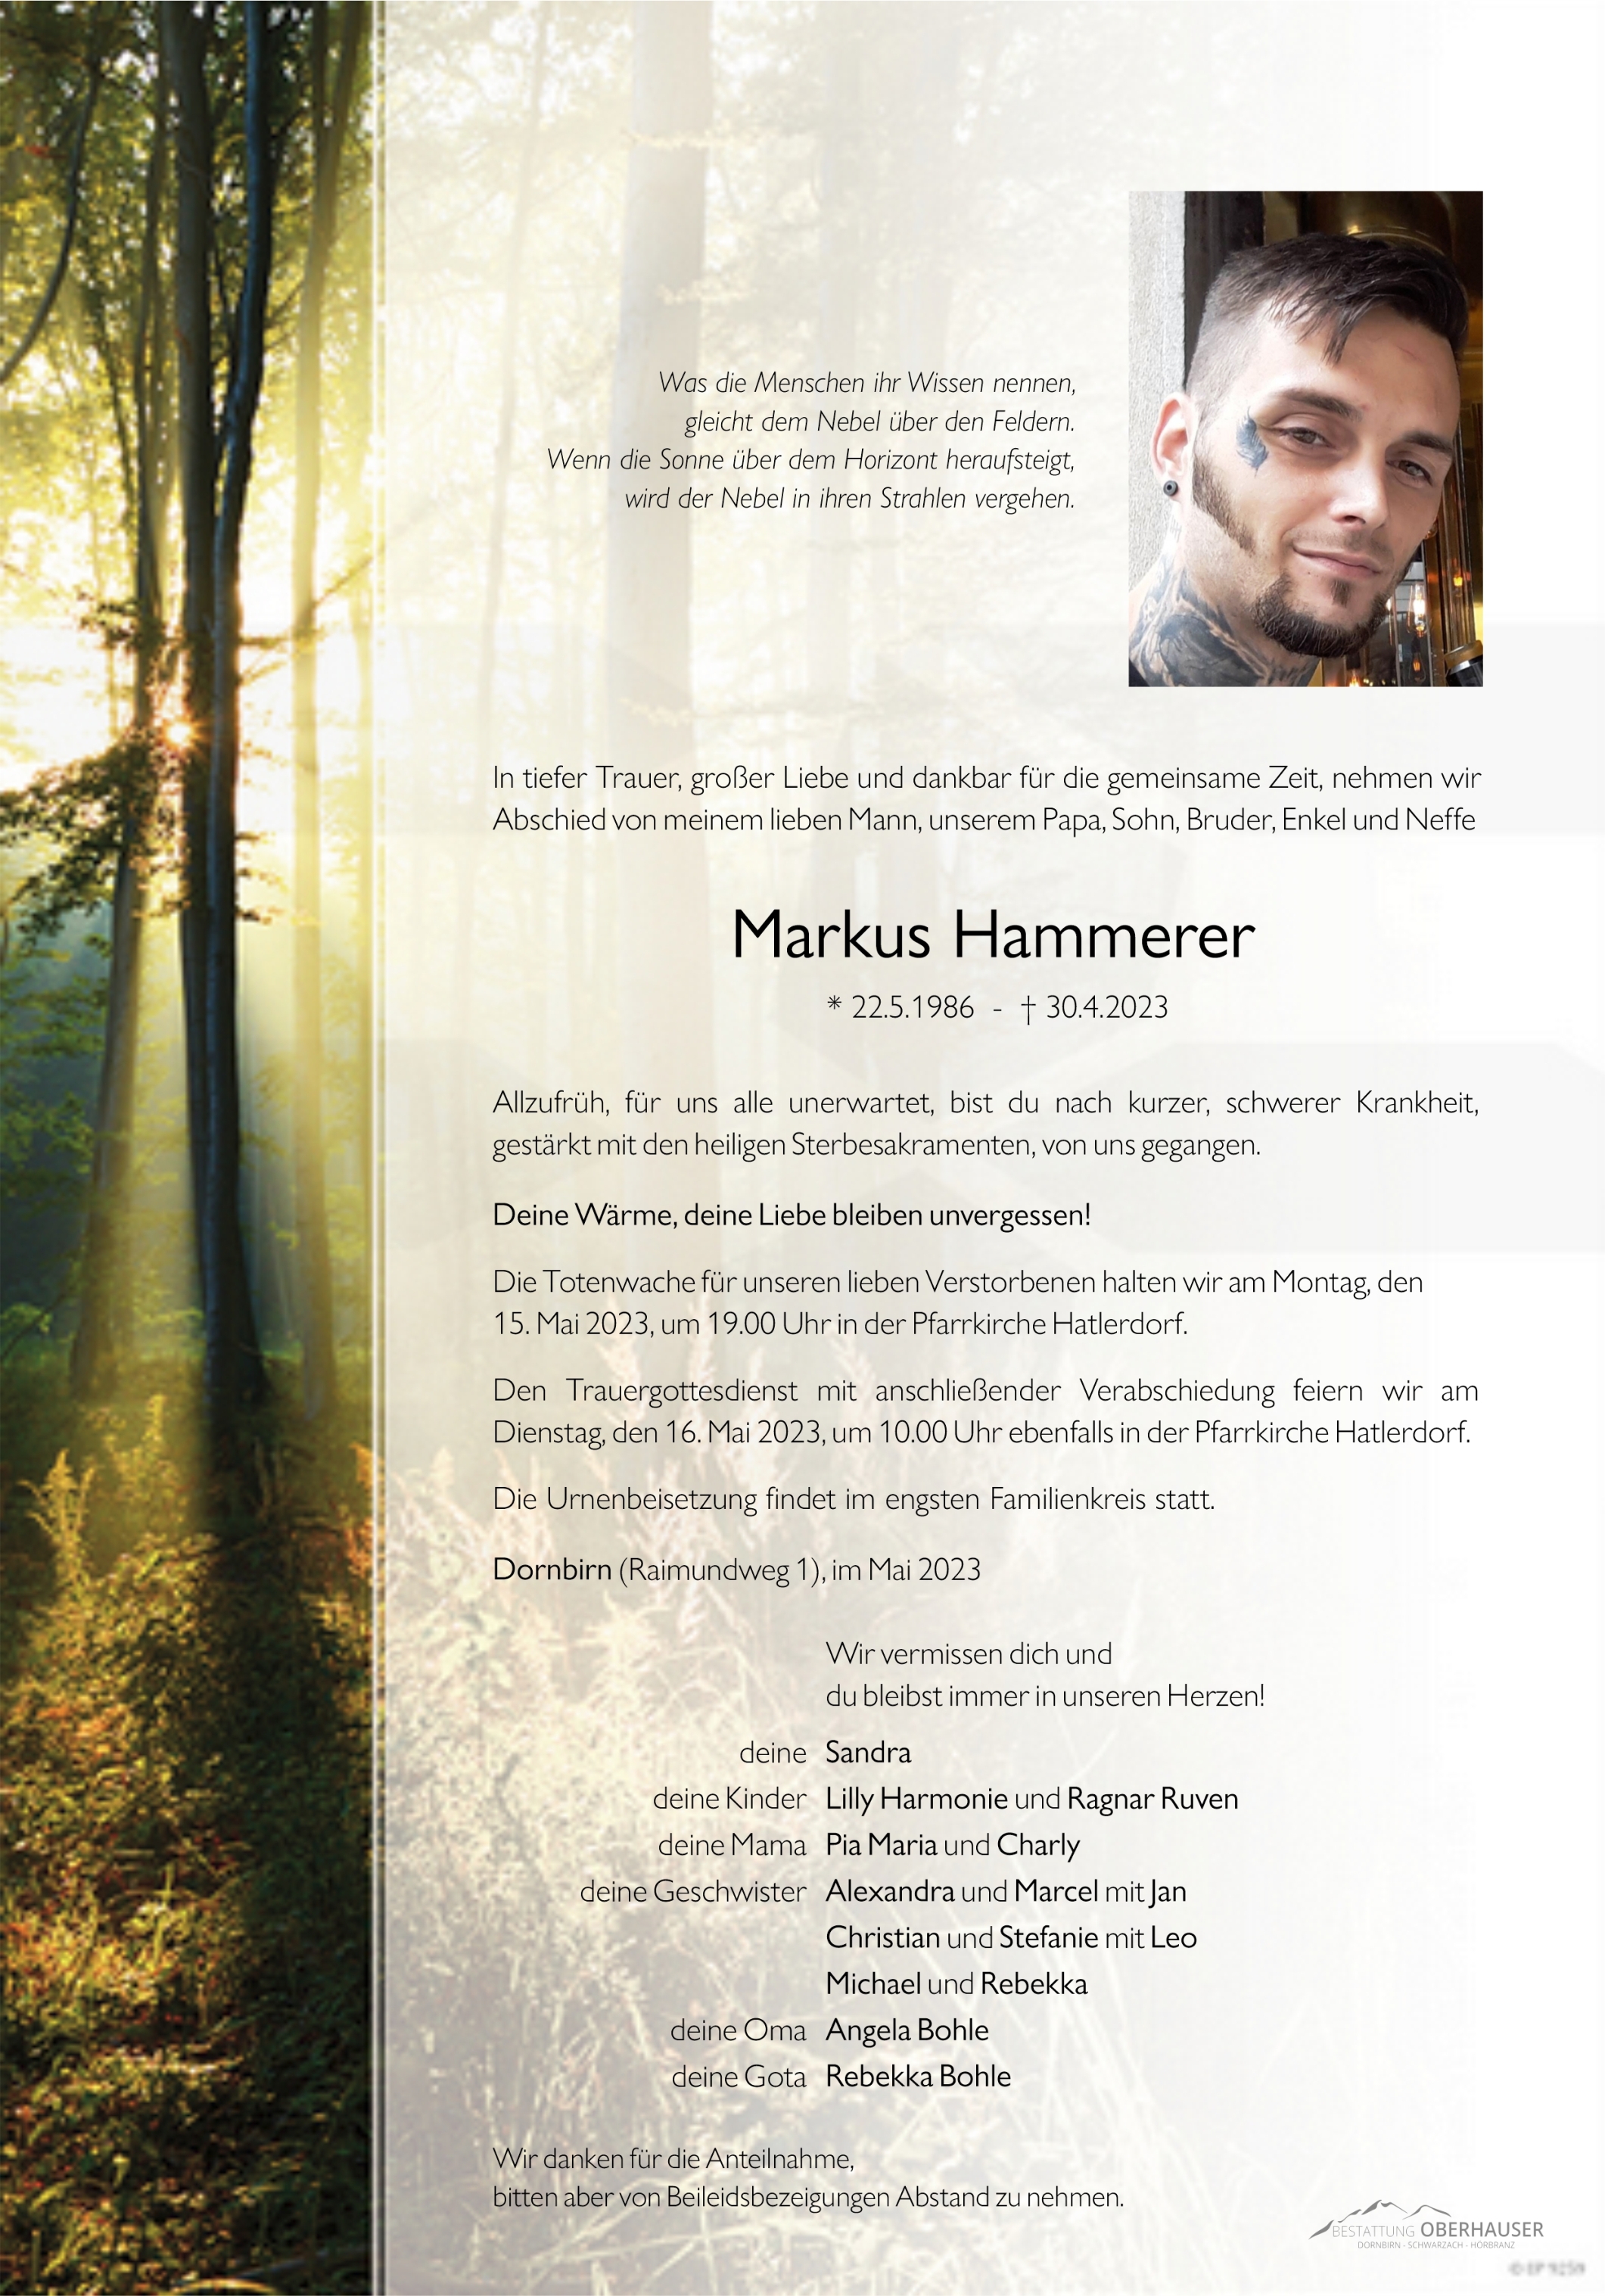 Markus Hammerer